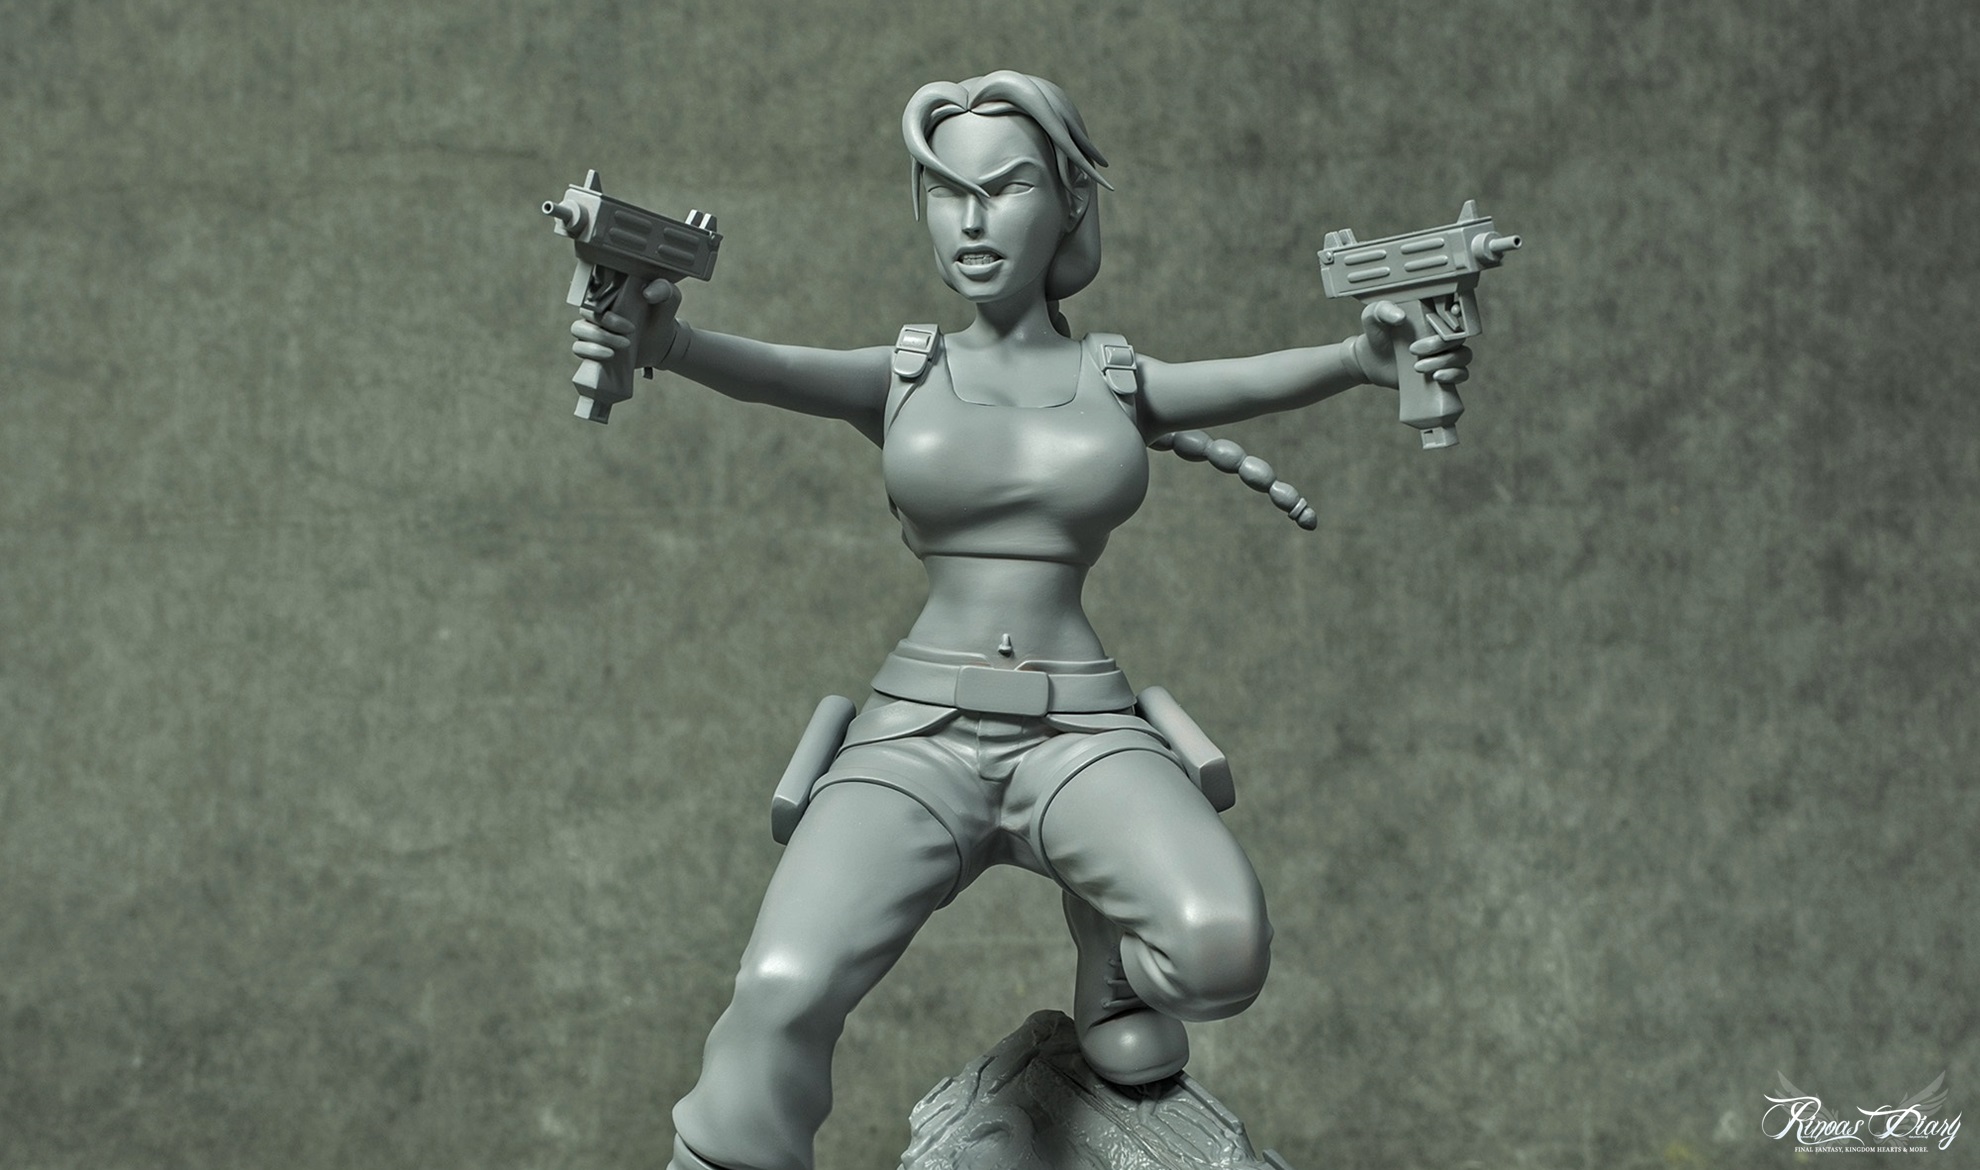 Un primo sguardo alle statuette di Lara Croft!